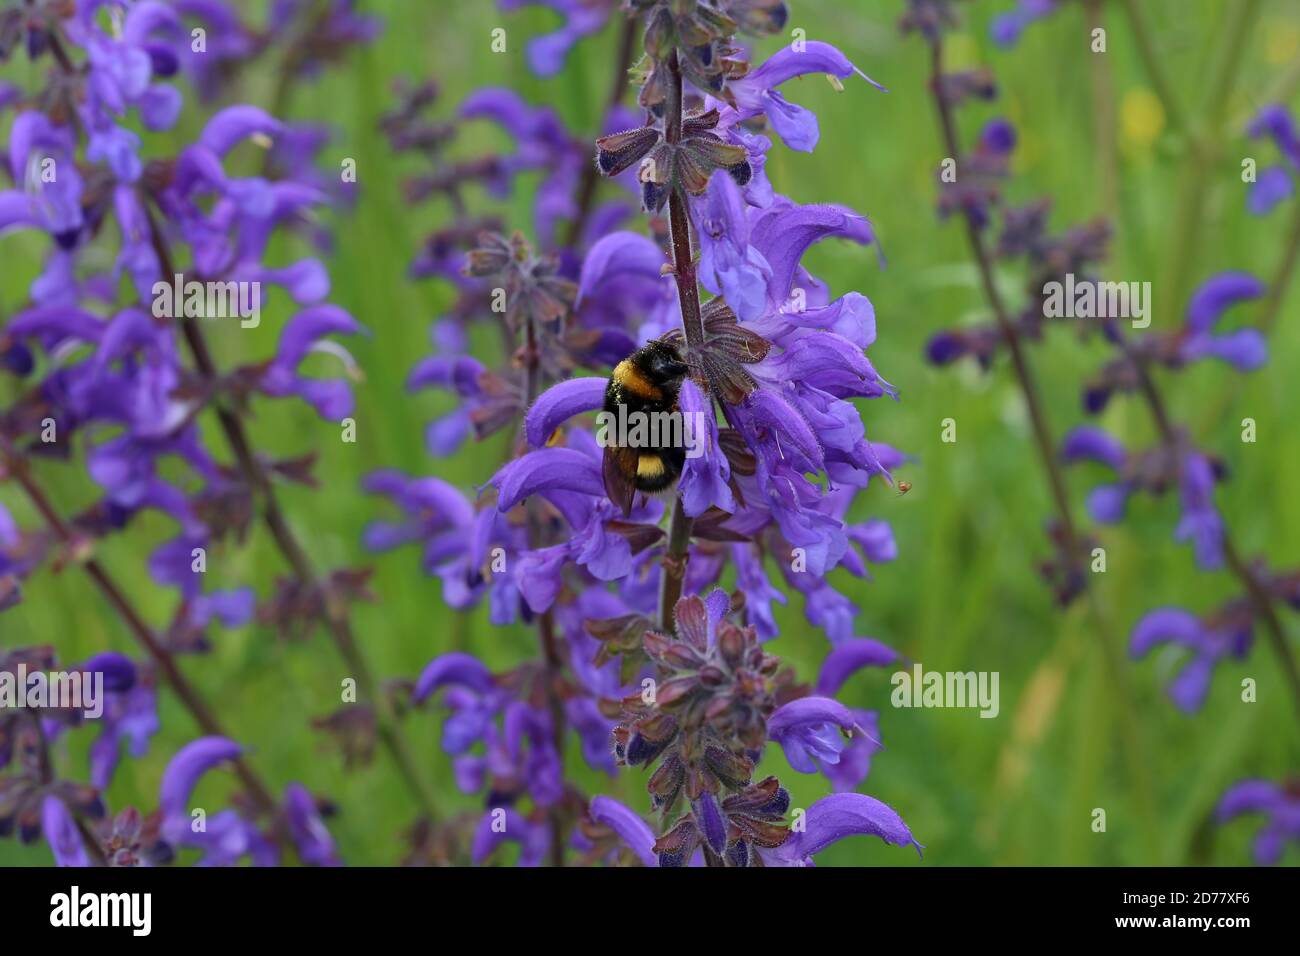 Gros plan de bumblebee déchiqueté bumblebee buvant le nectar de belle fleurs violettes Banque D'Images